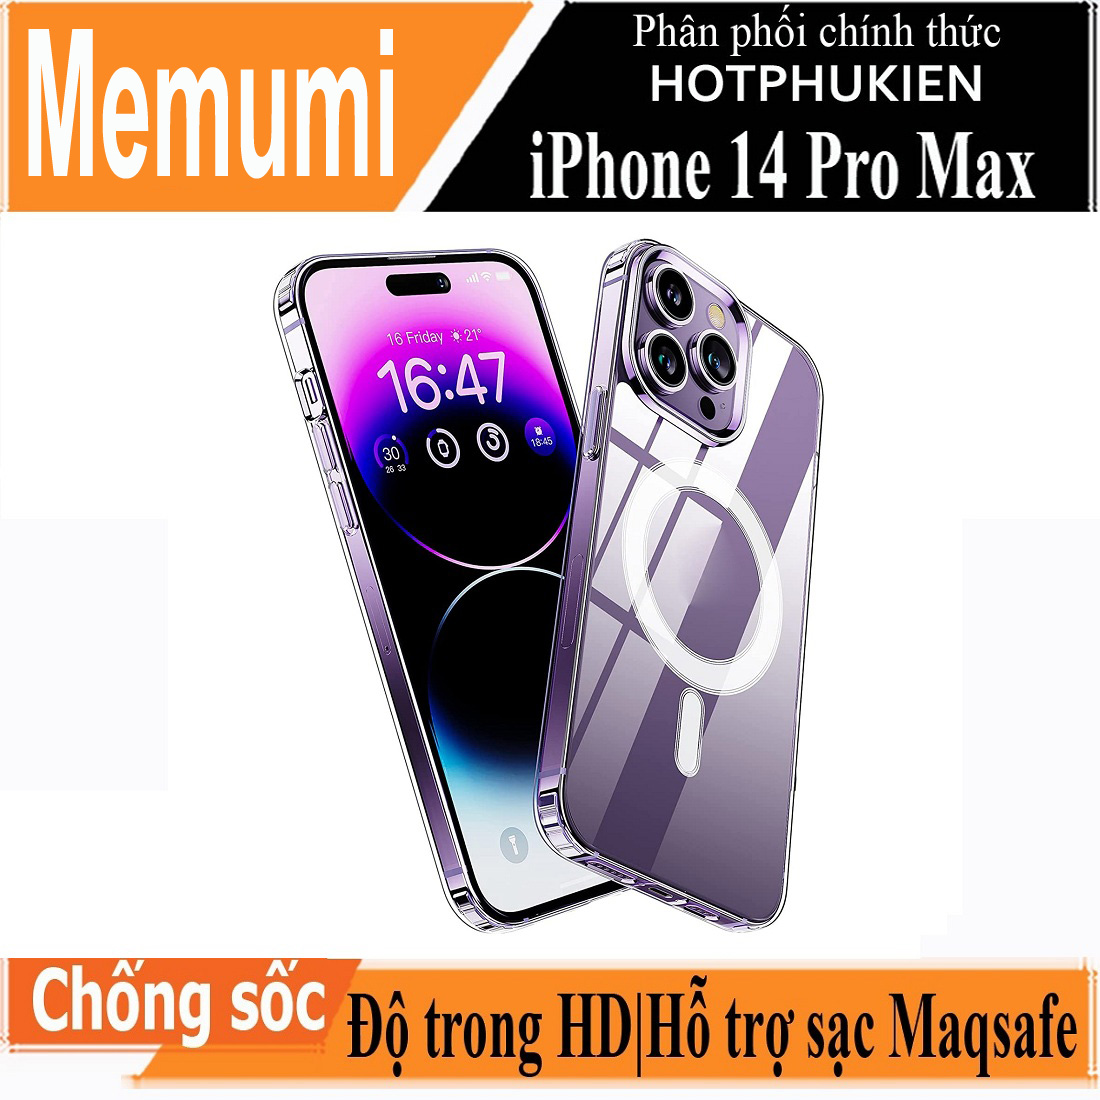 Ốp lưng trong suốt hỗ trợ sạc Magsafe cho iPhone 14 Pro Max (6.7 inch) hiệu Memumi